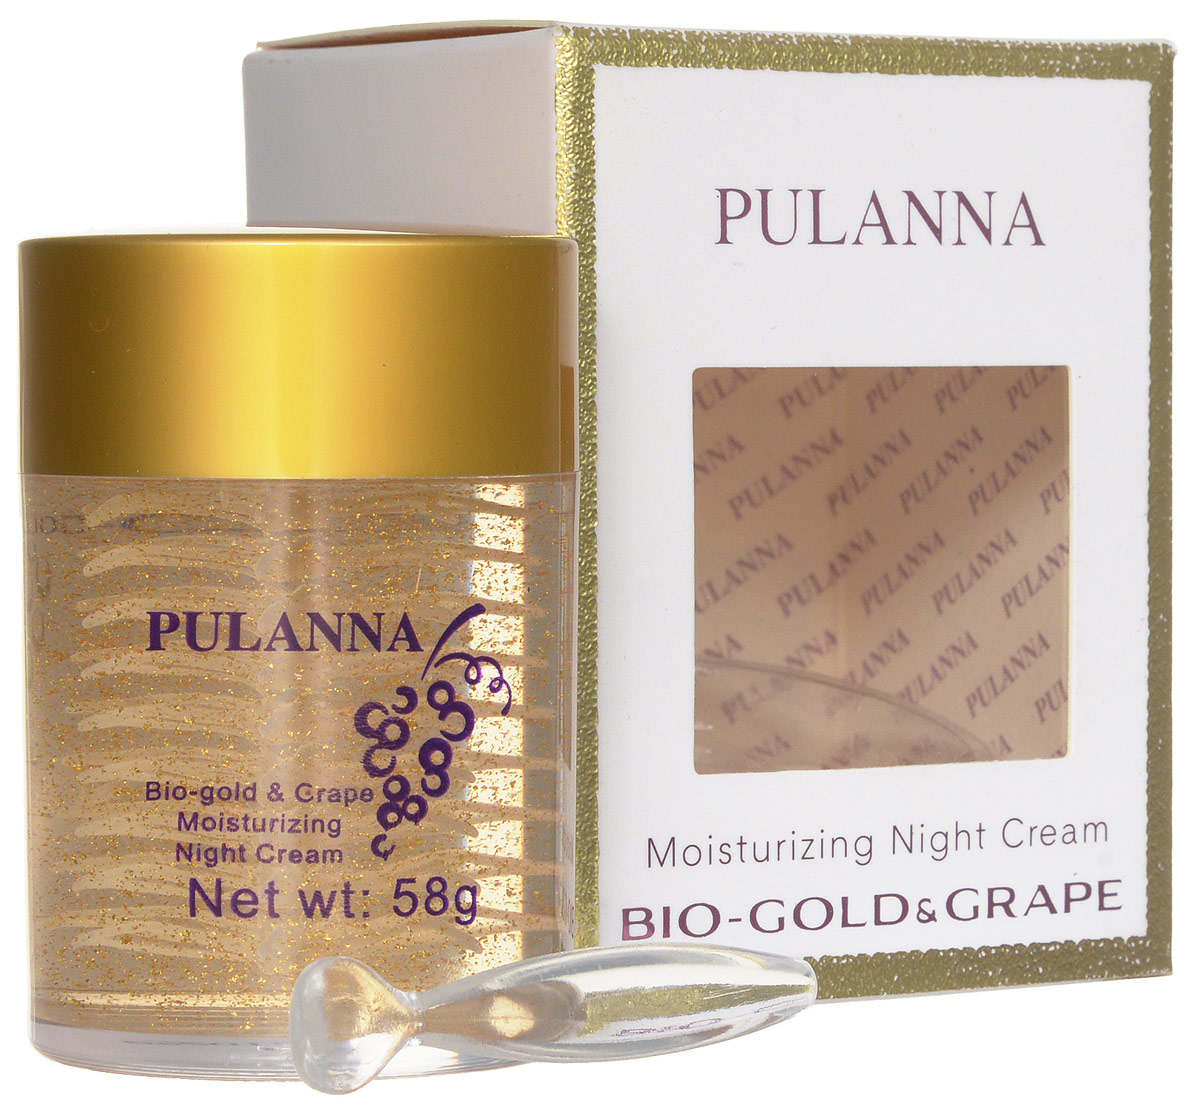 заказать и купить Pulanna Увлажняющий ночной крем на основе био-золота и винограда - Bio-gold &Grape Moisturizing Night Cream 58 г